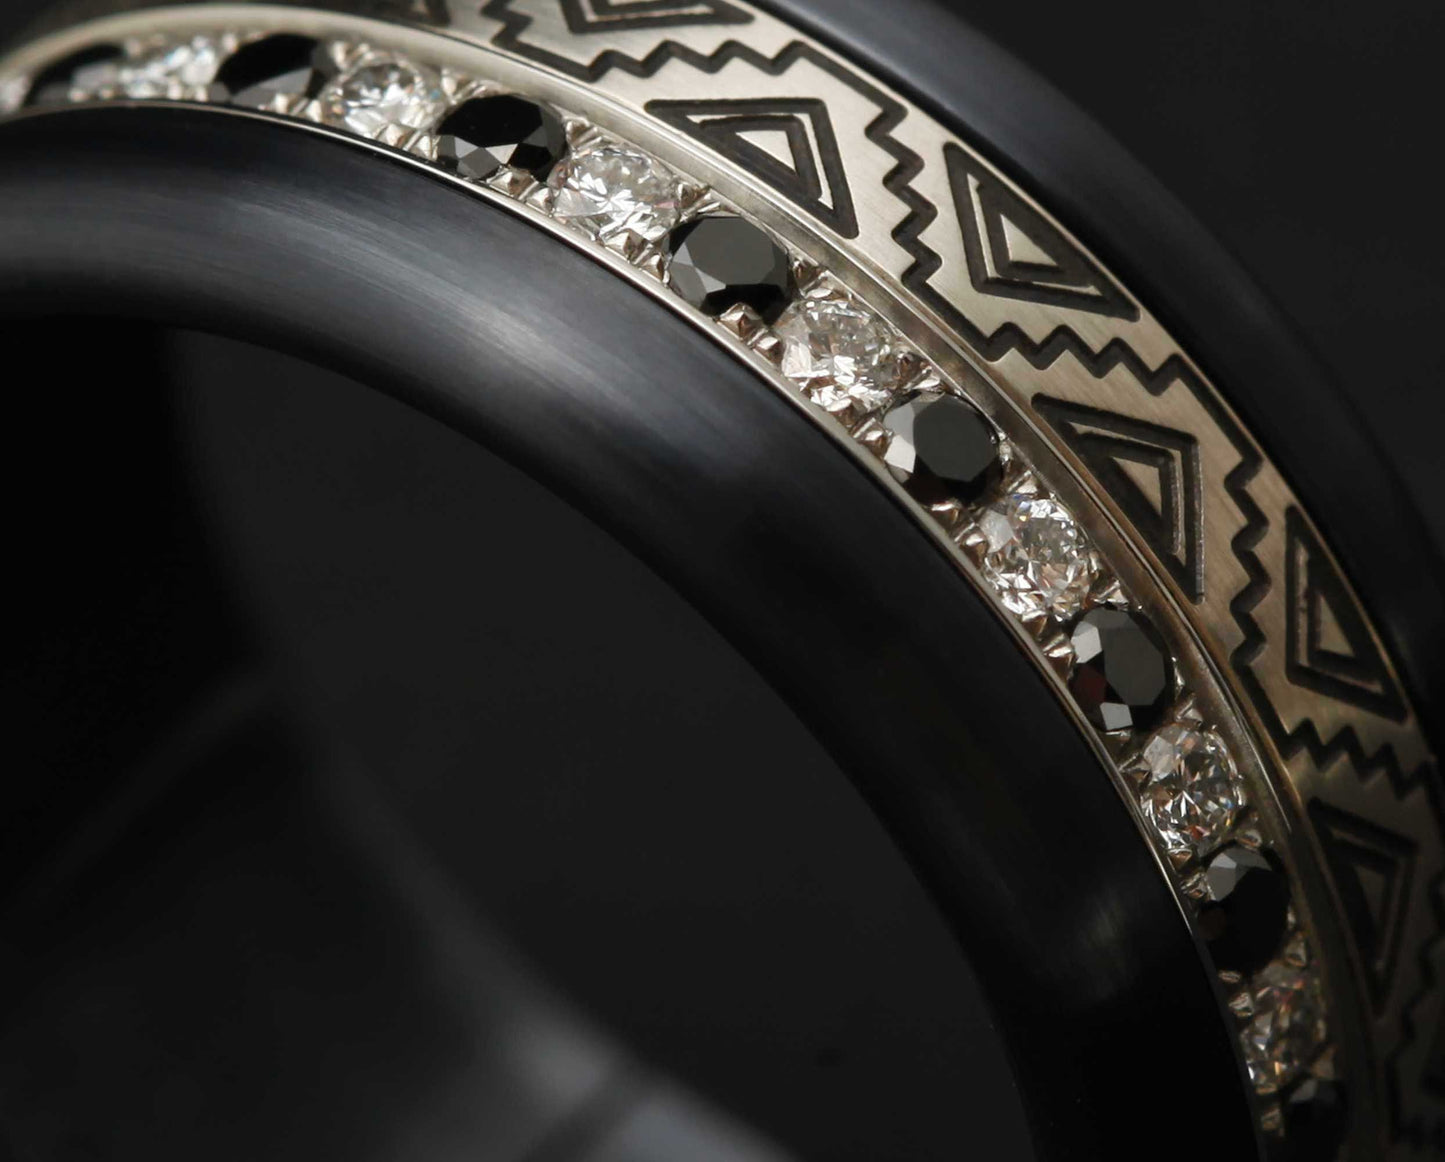 Medium Addon aus Stahl mit Diamanten und schwarzen 1,6mm Diamanten vollständig besetzt